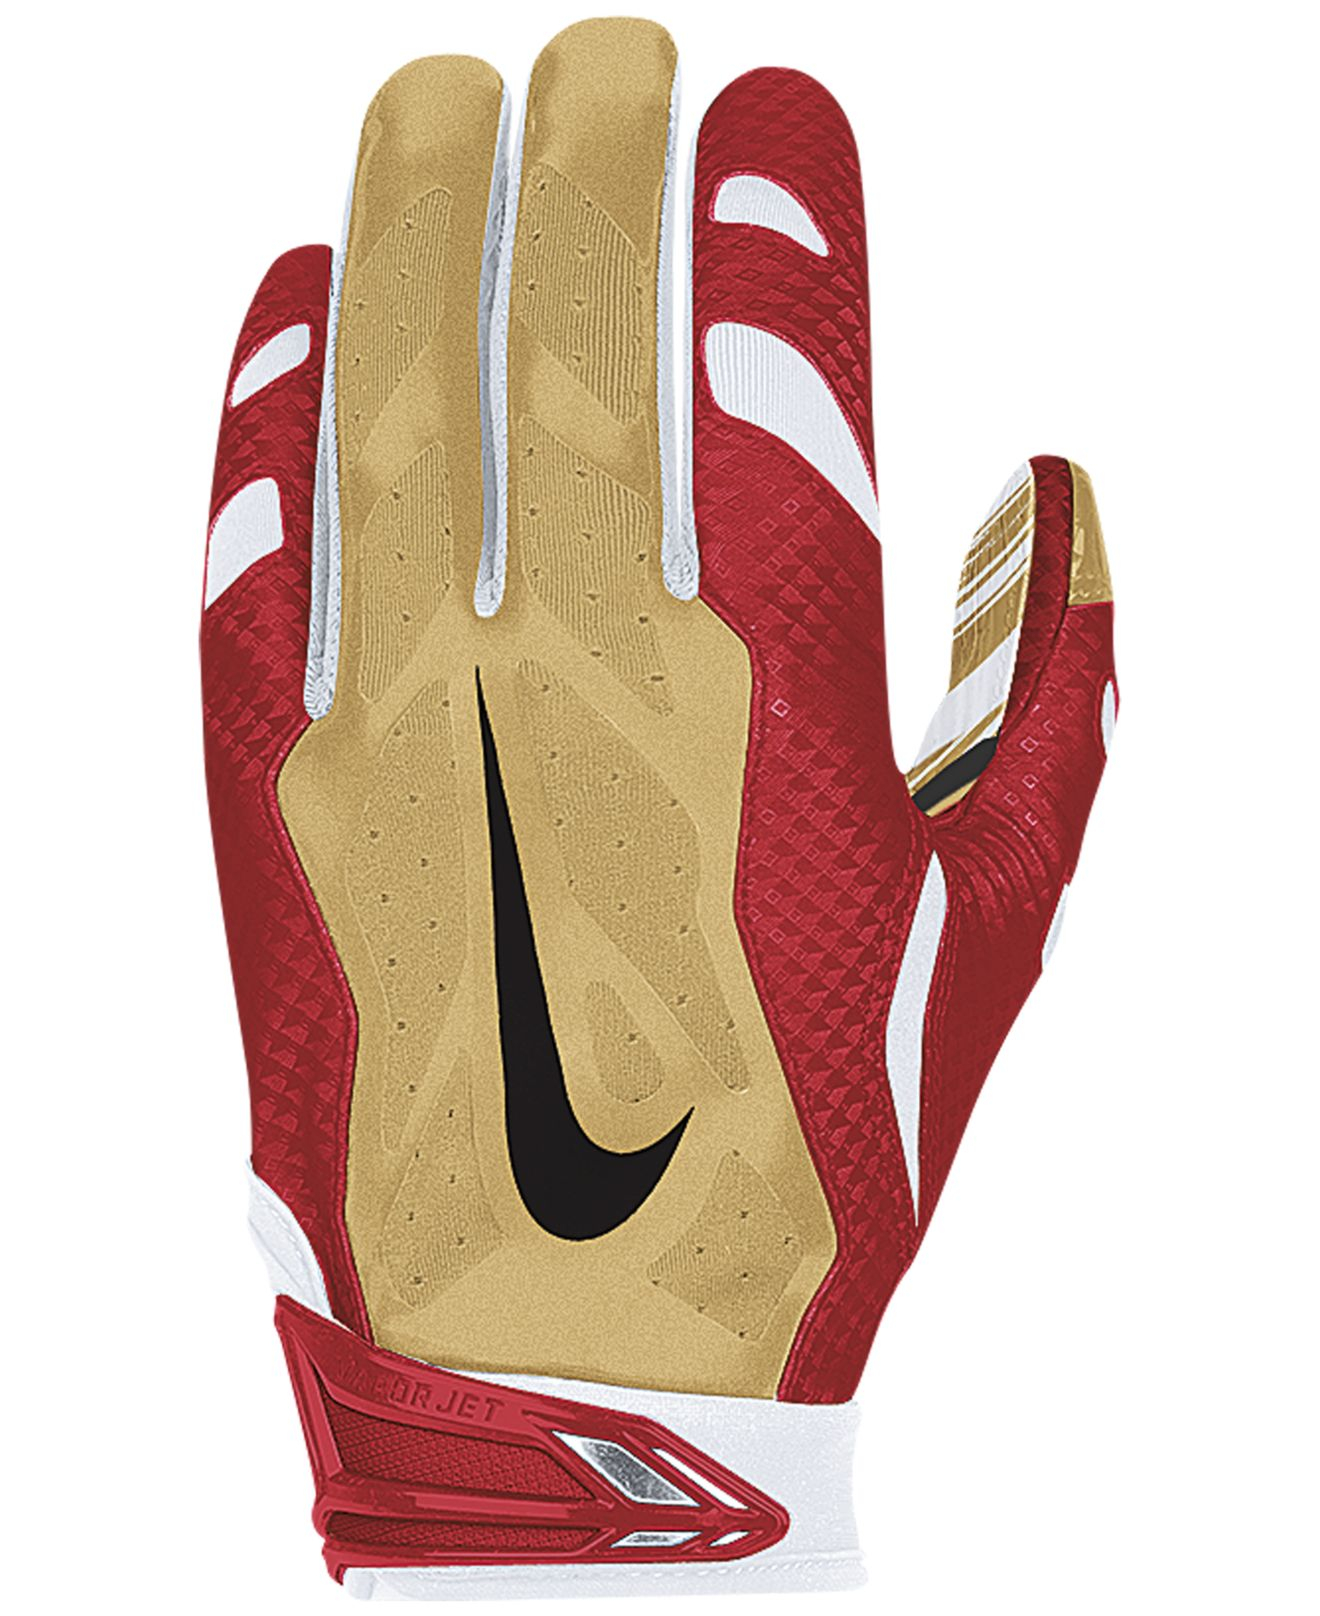 49ers nike vapor gloves